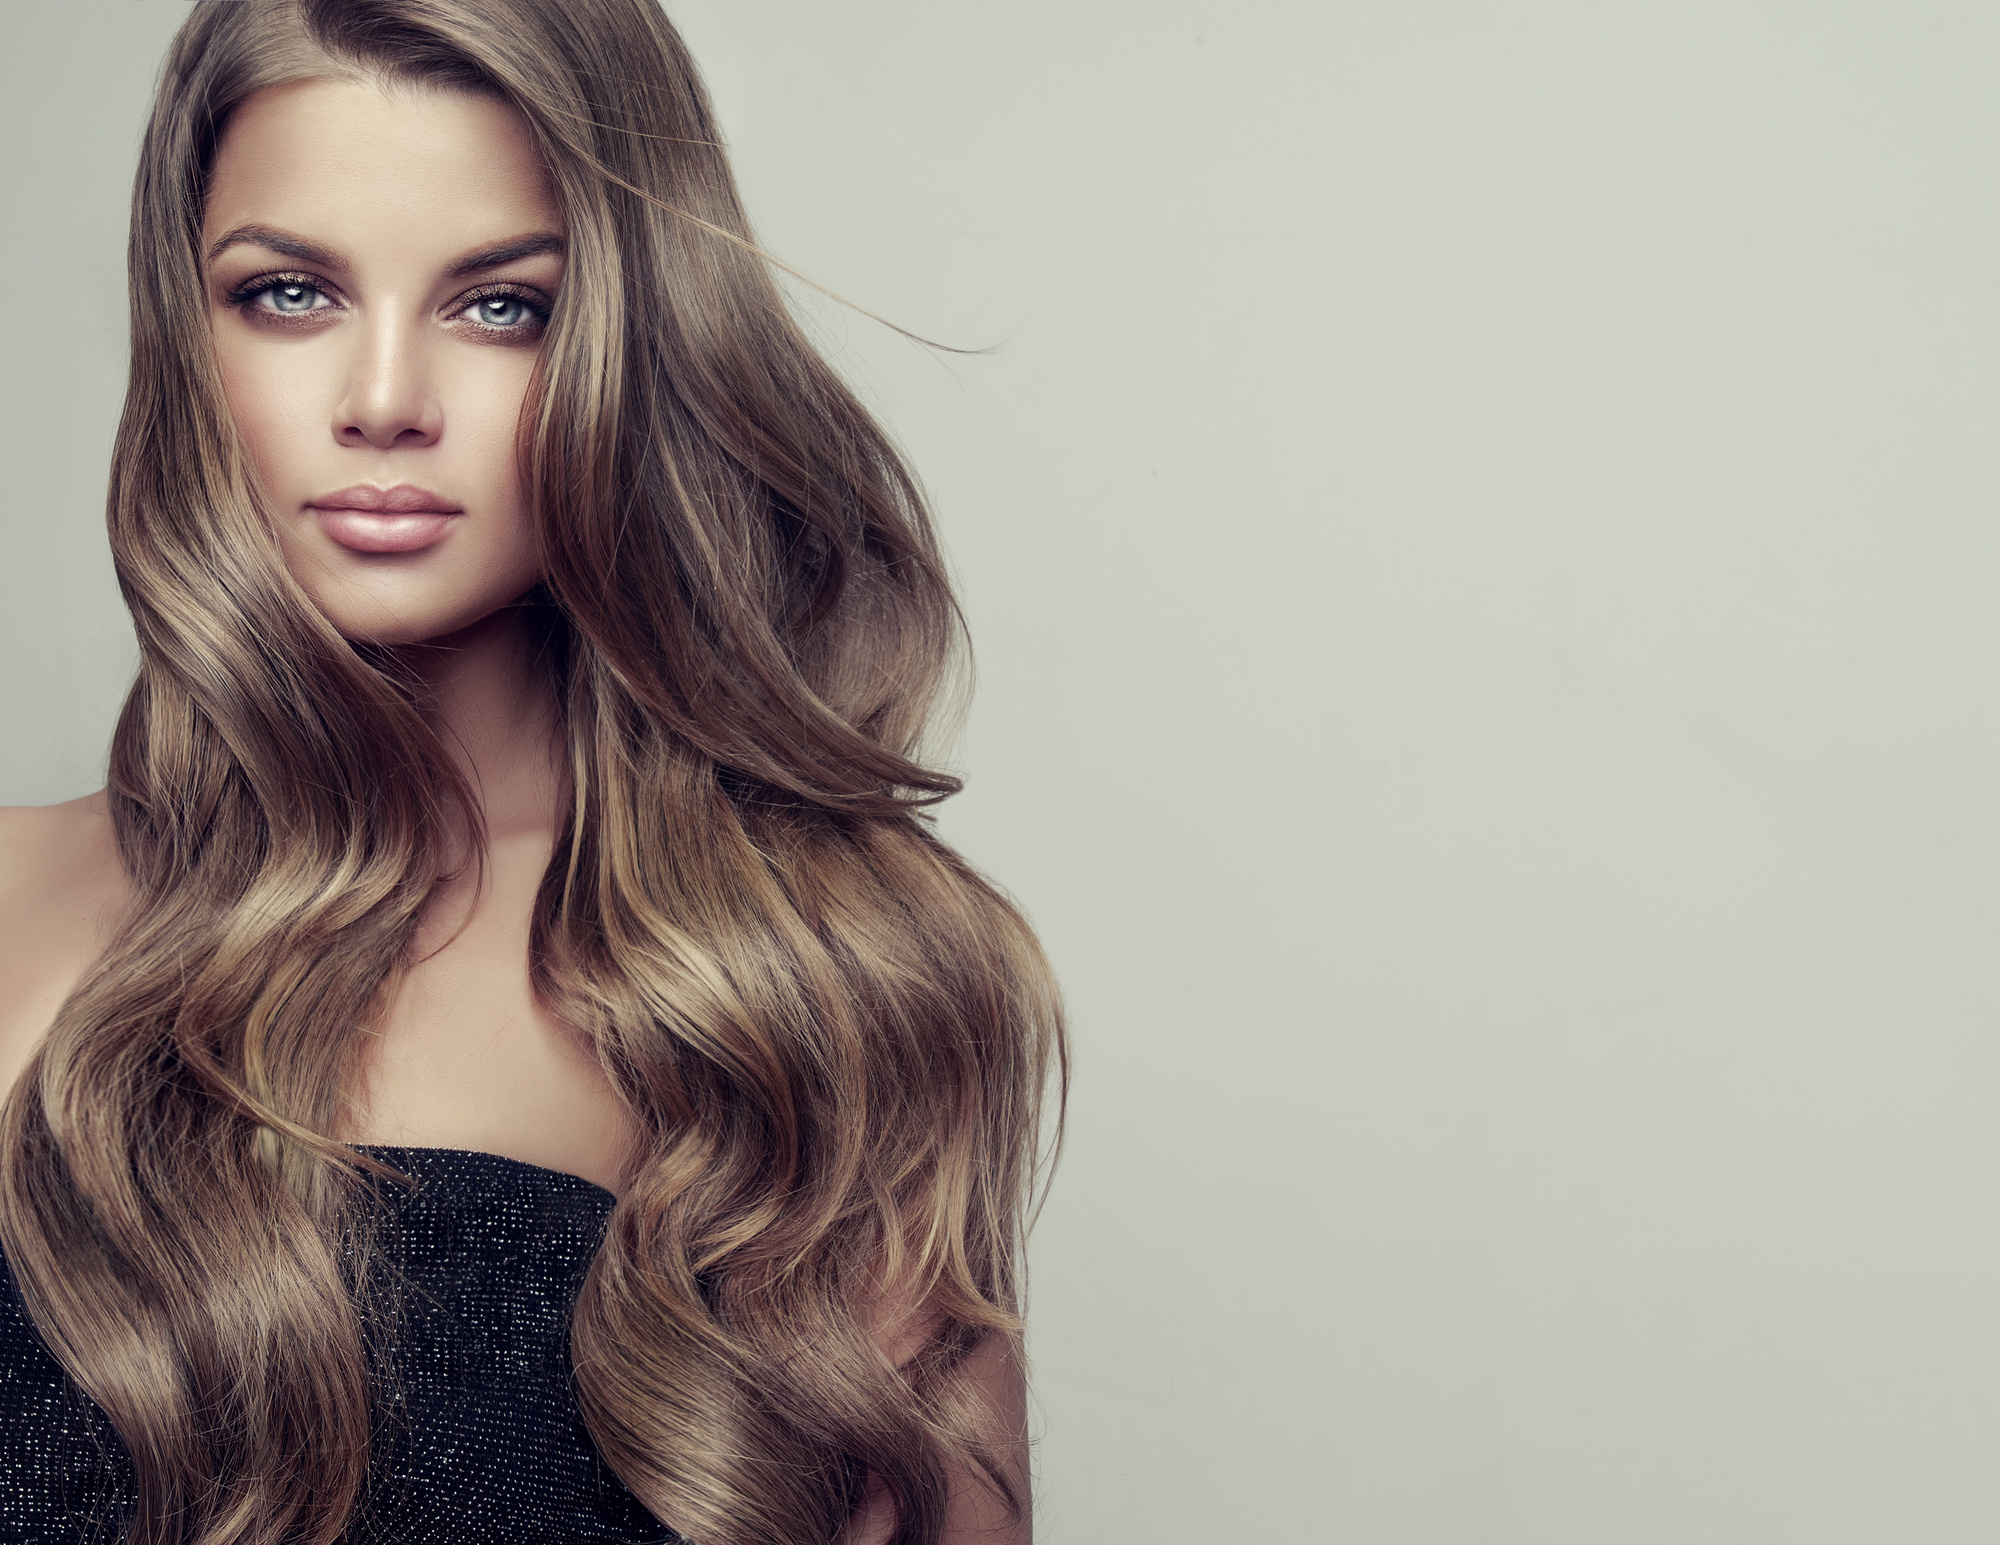 How to Get Fuller Hair: 4 Tips for Women